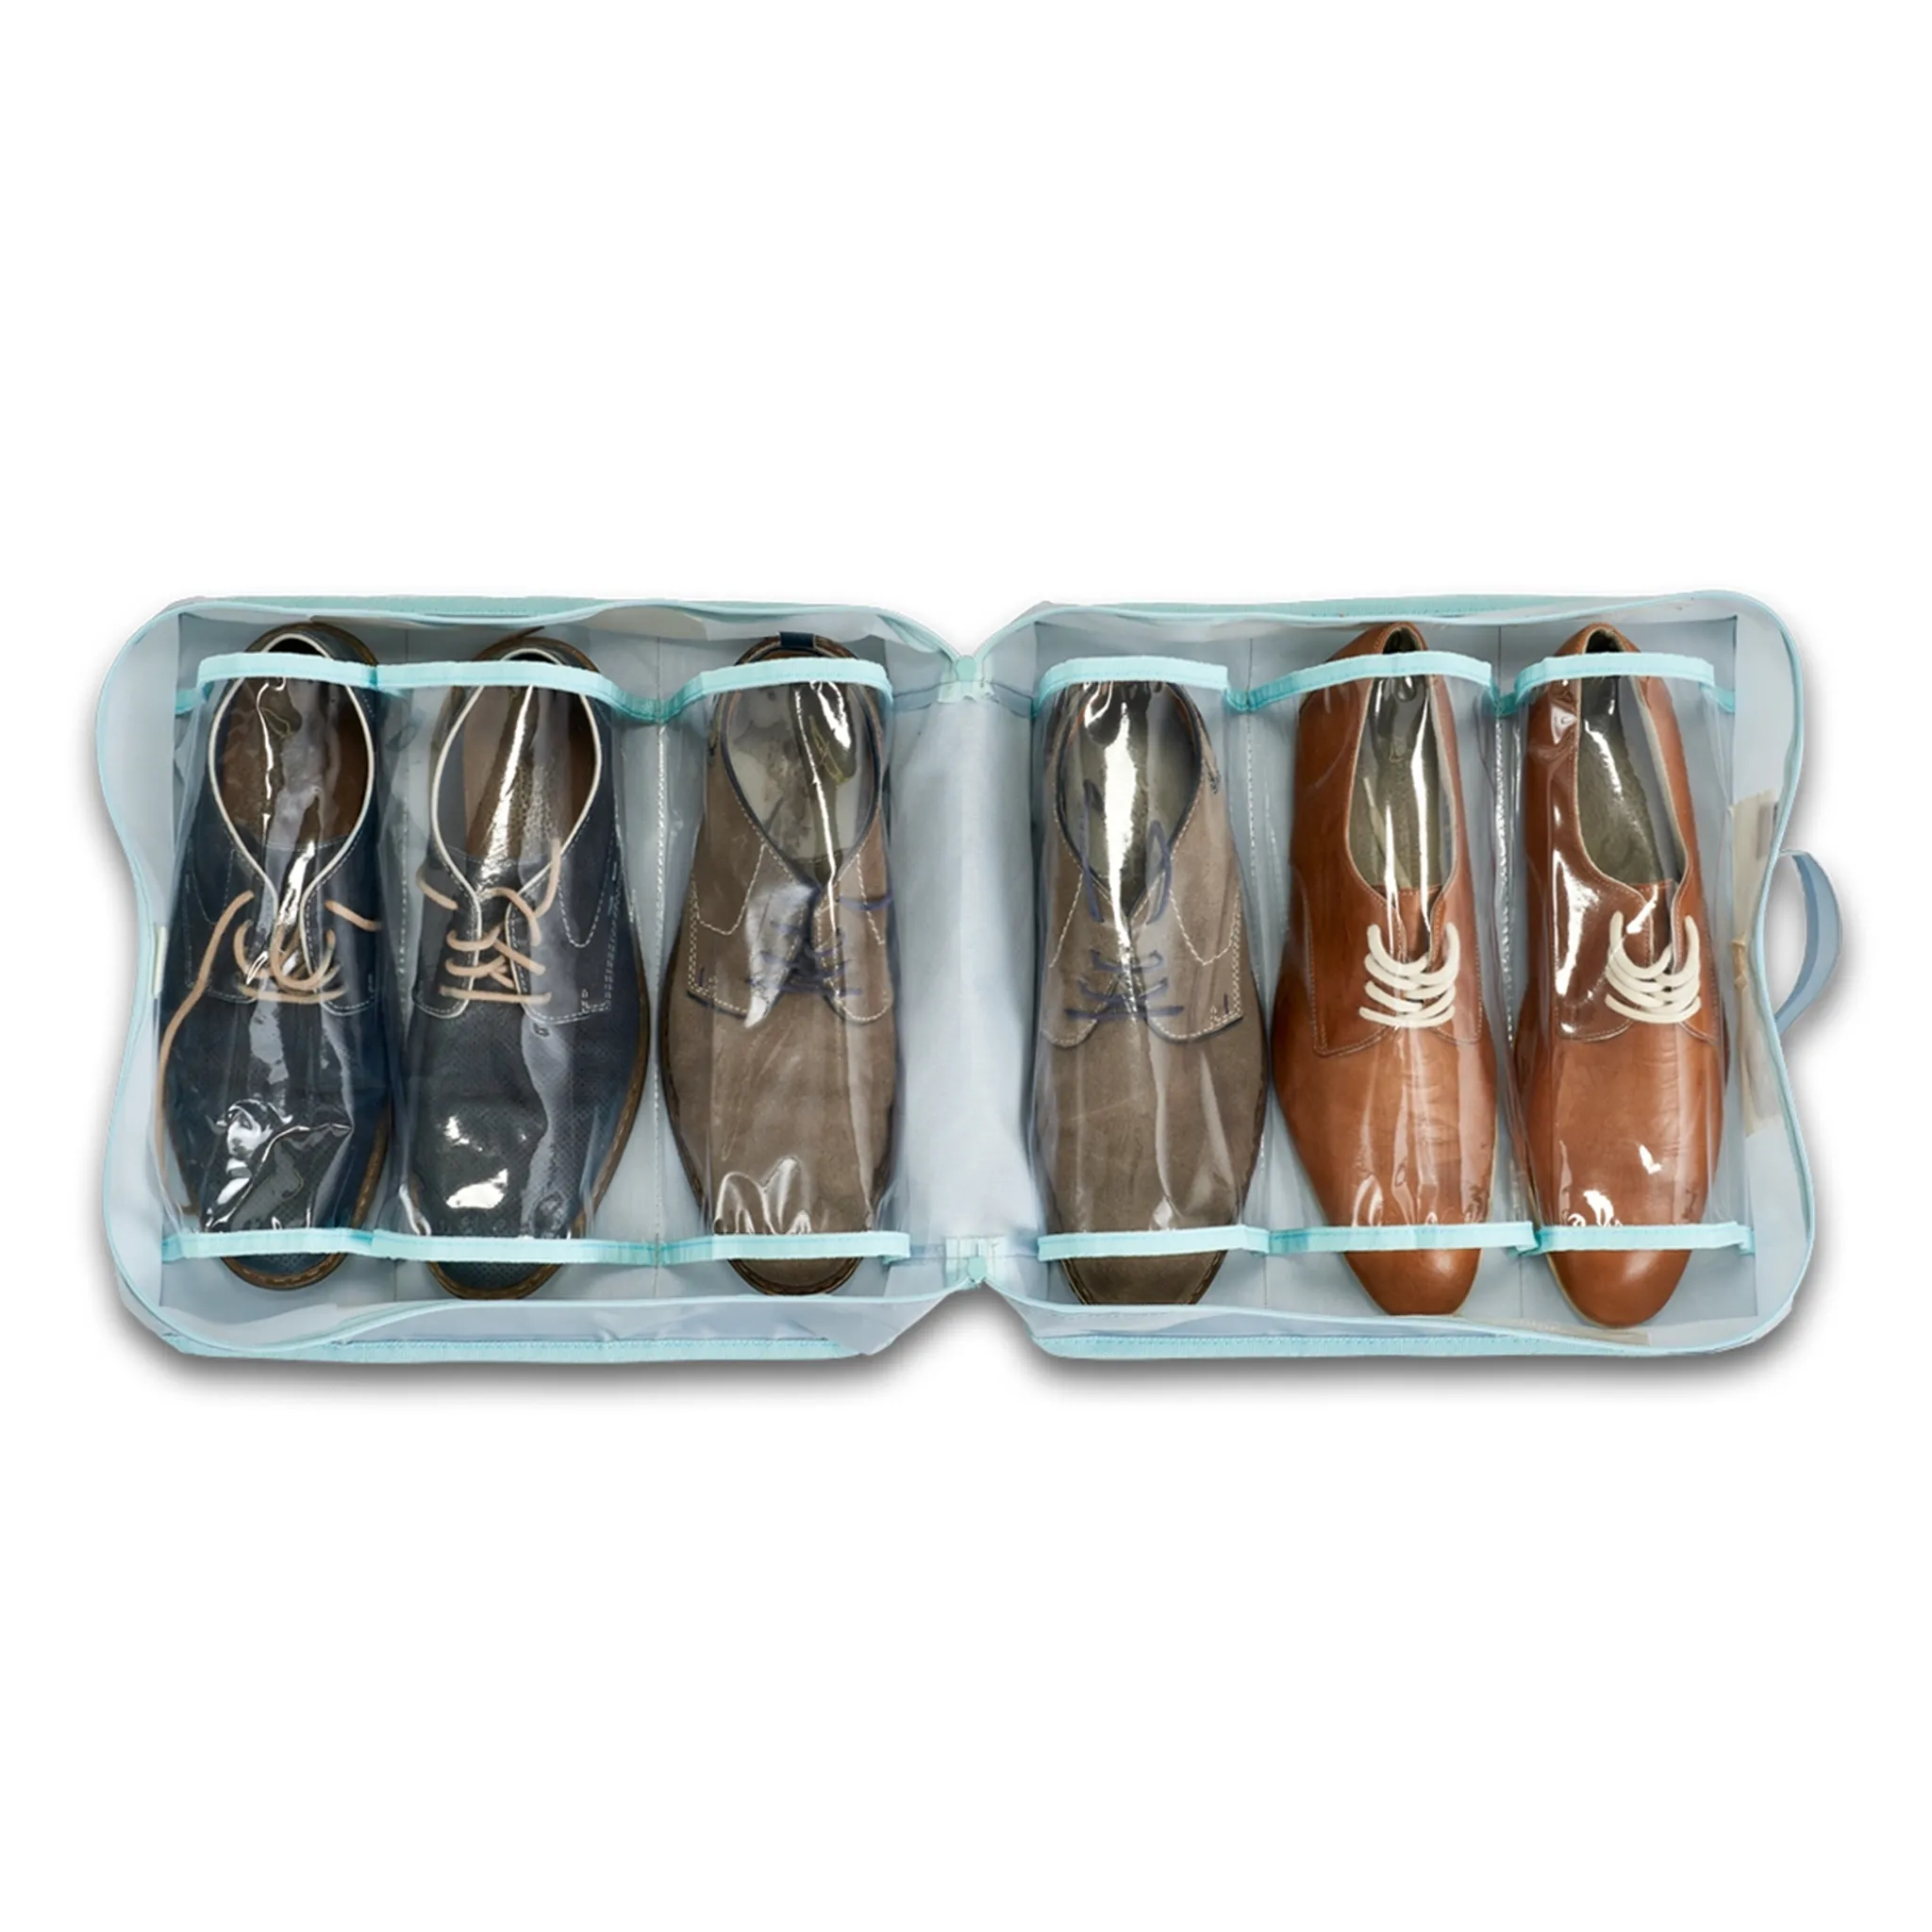 Multifunktionale tragbare Schuhaufbewahrungstasche für unterwegs color Grau